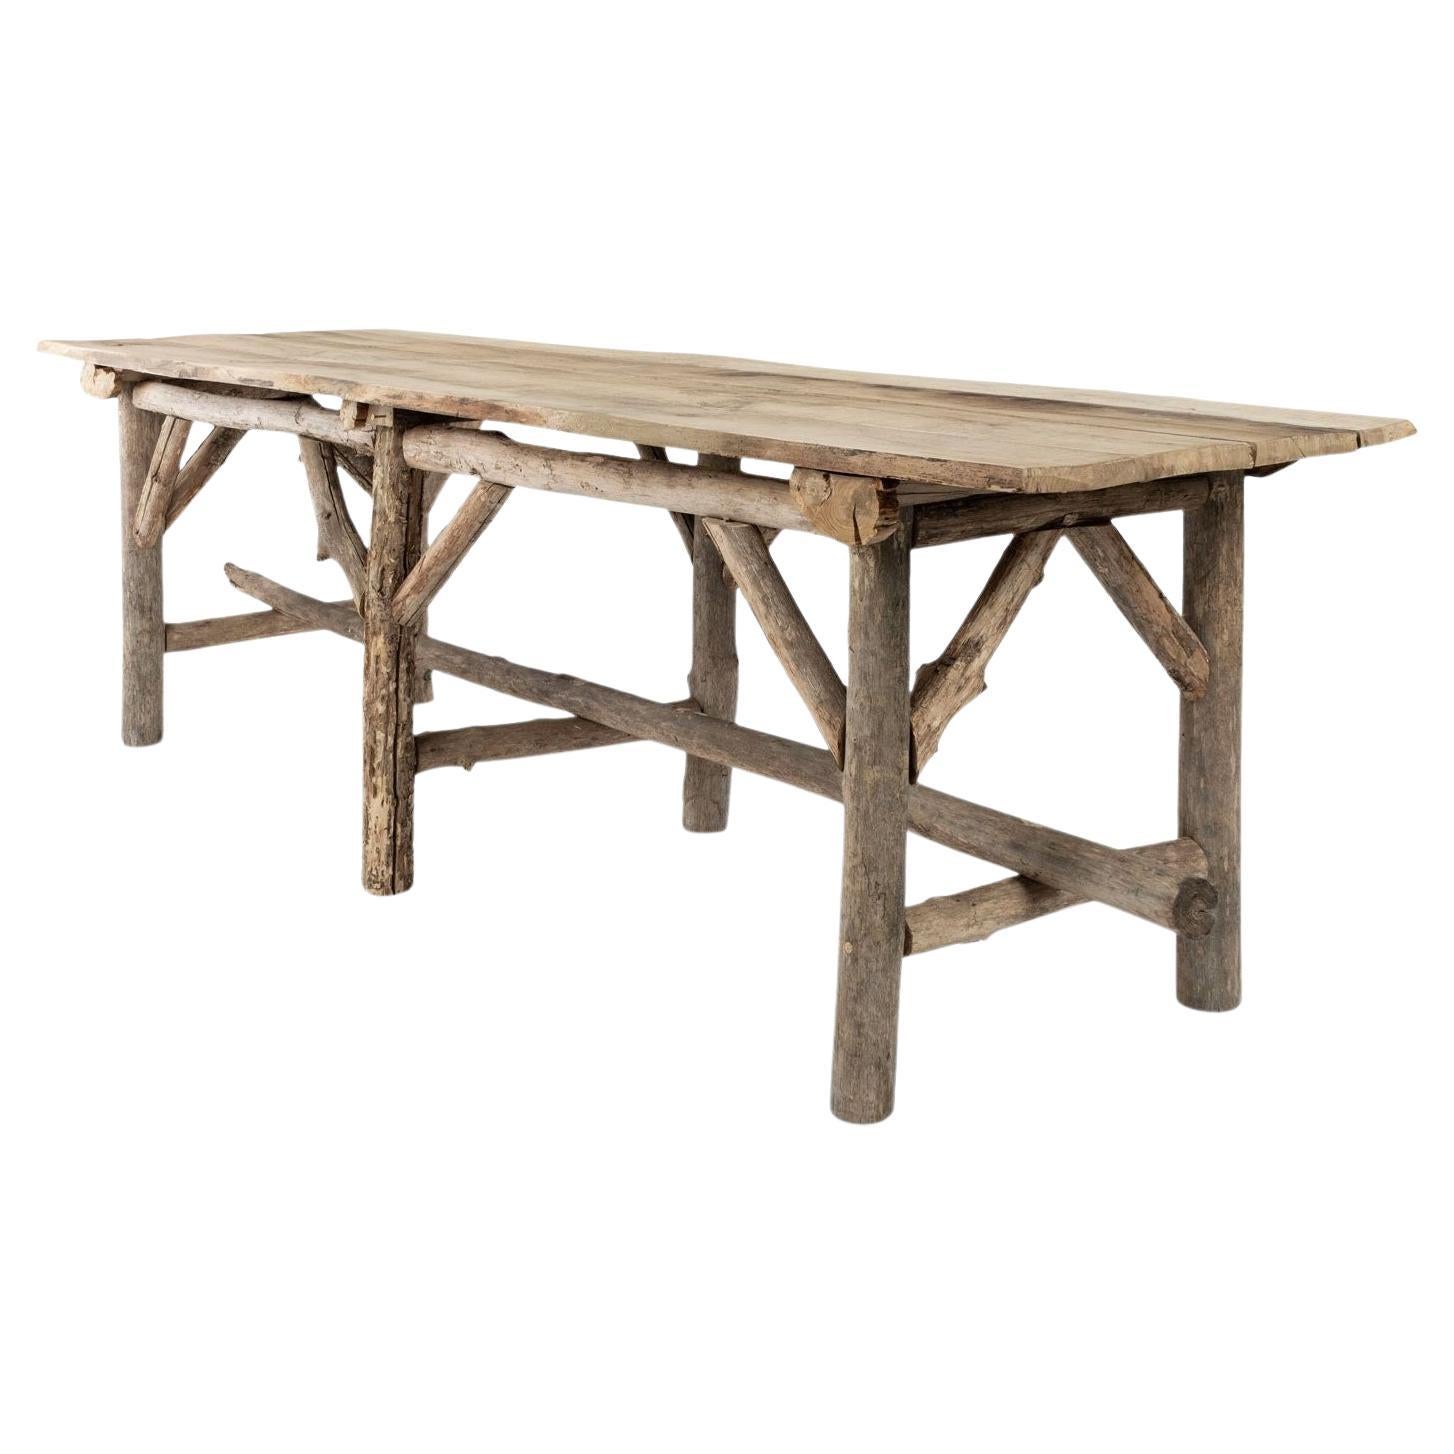 Table de forme rectangulaire à bords naturels surélevés sur une base à tréteaux en bois rustique